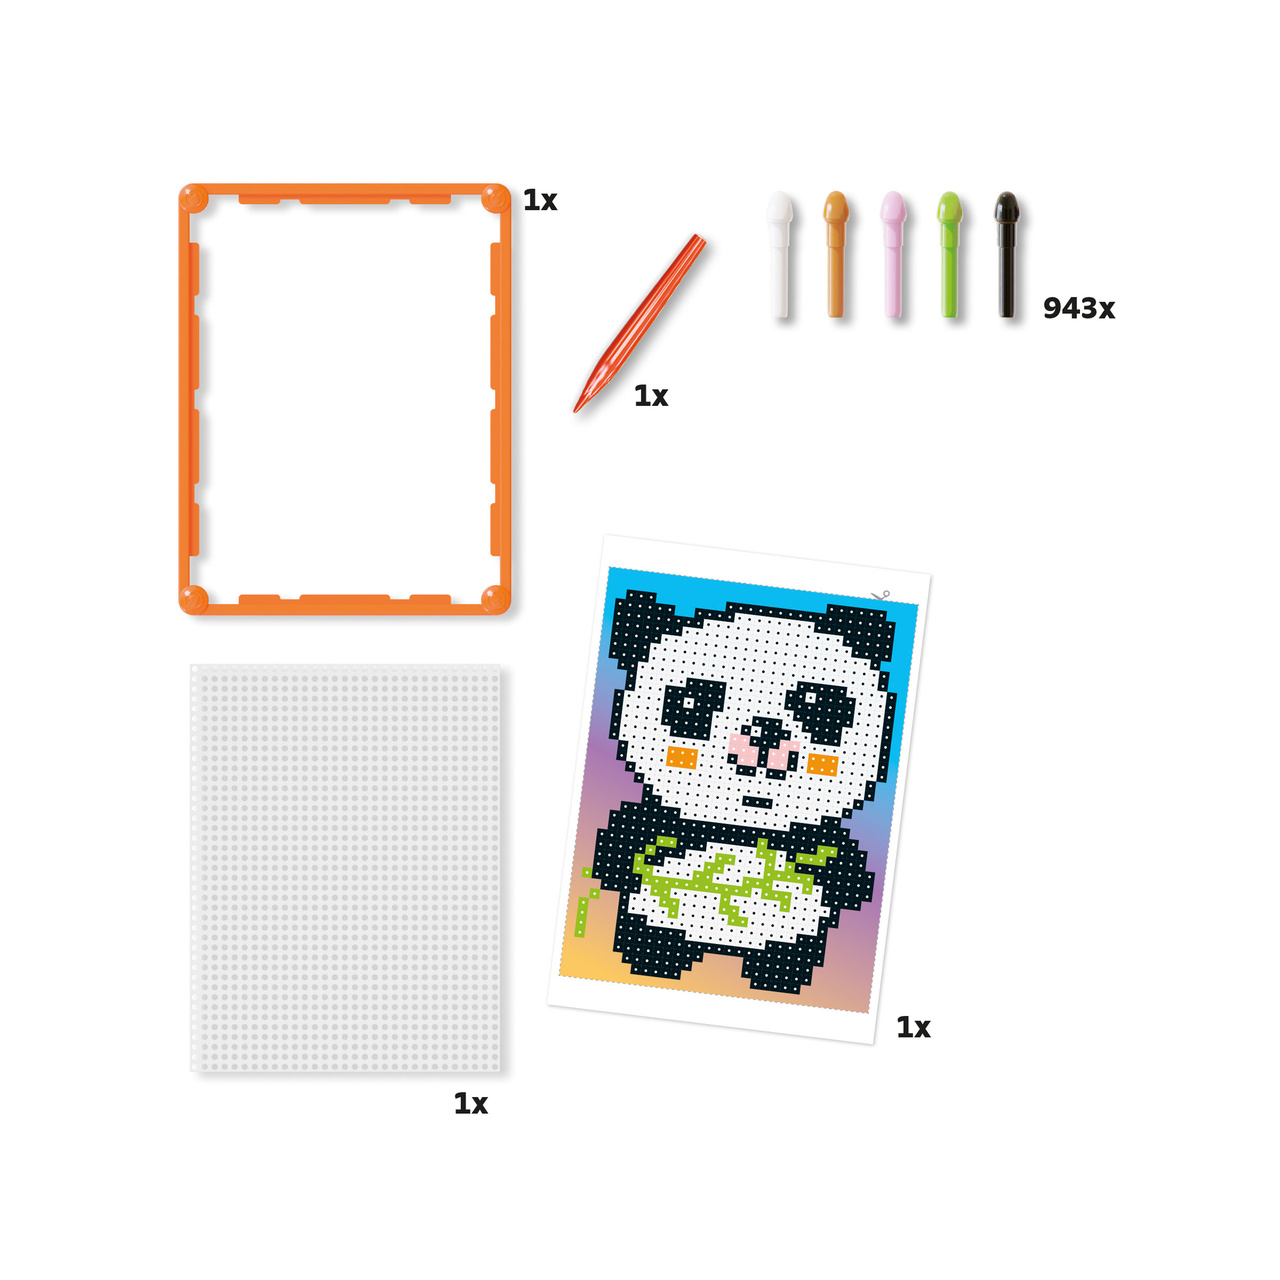 Askartelu quercetti  pixelart basic panda